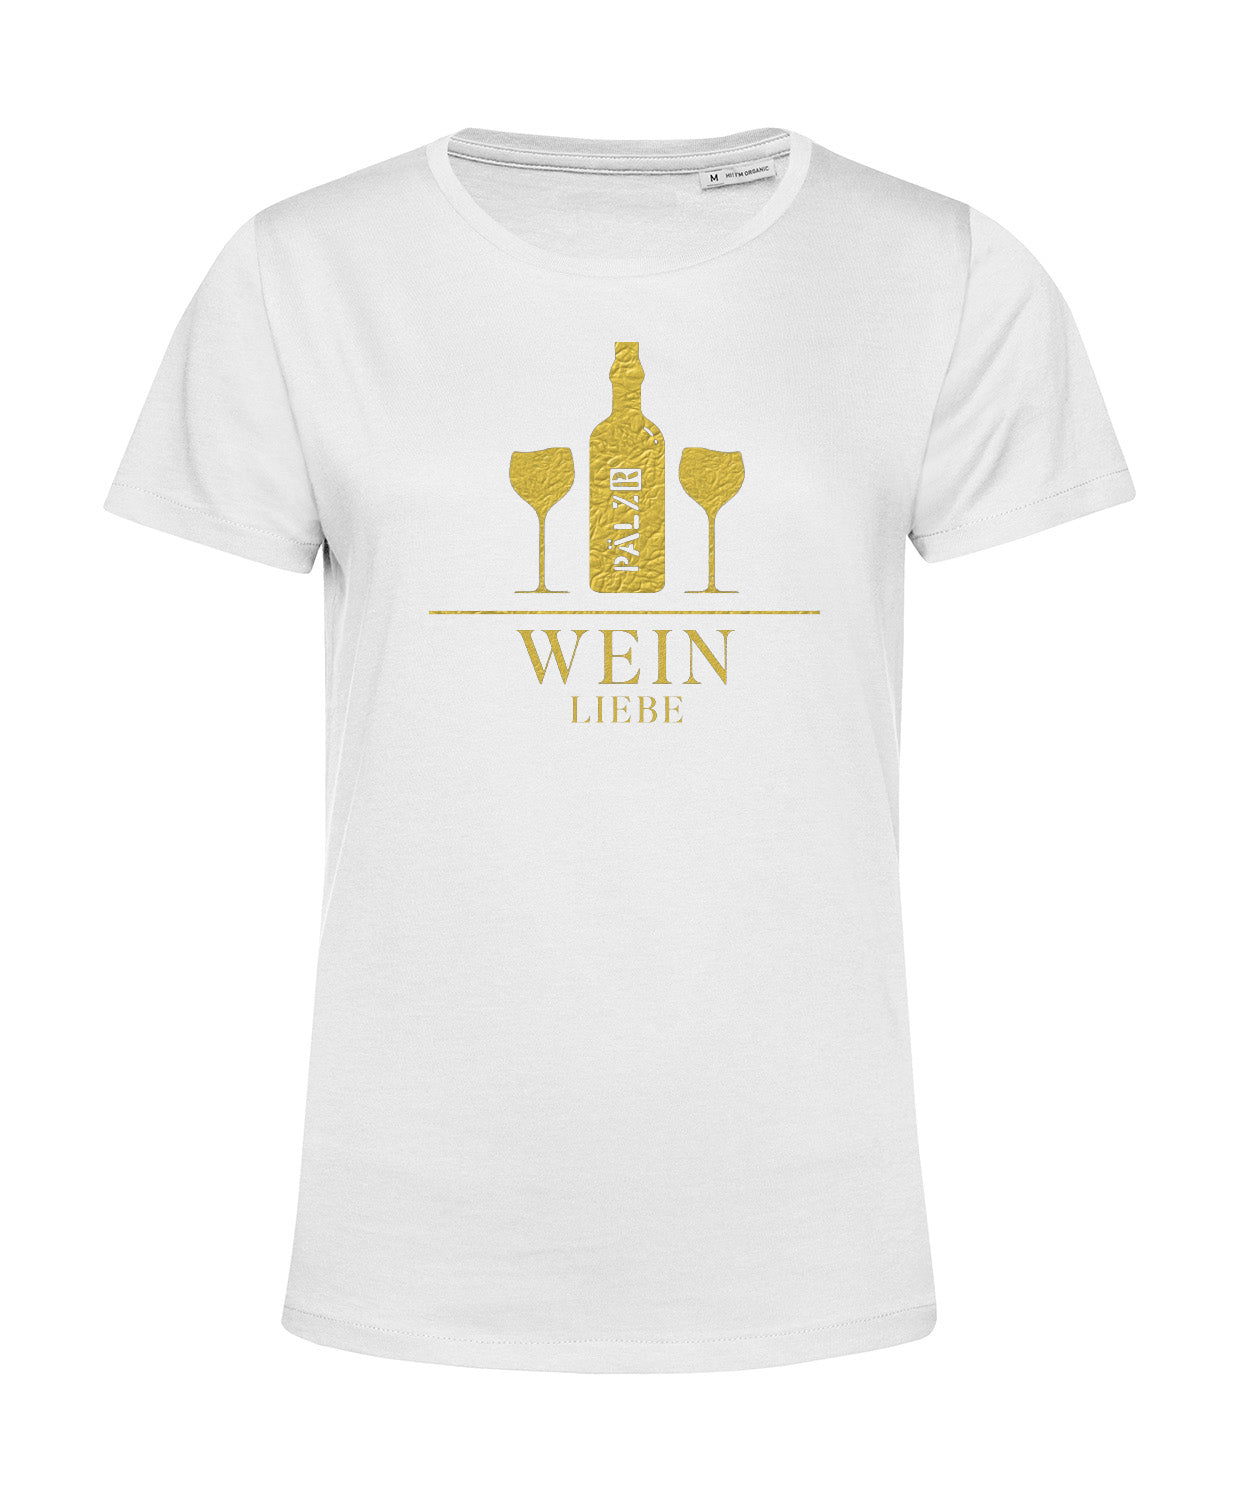 Frauen | T-Shirt | Weinliebe | weiss | Logo gold